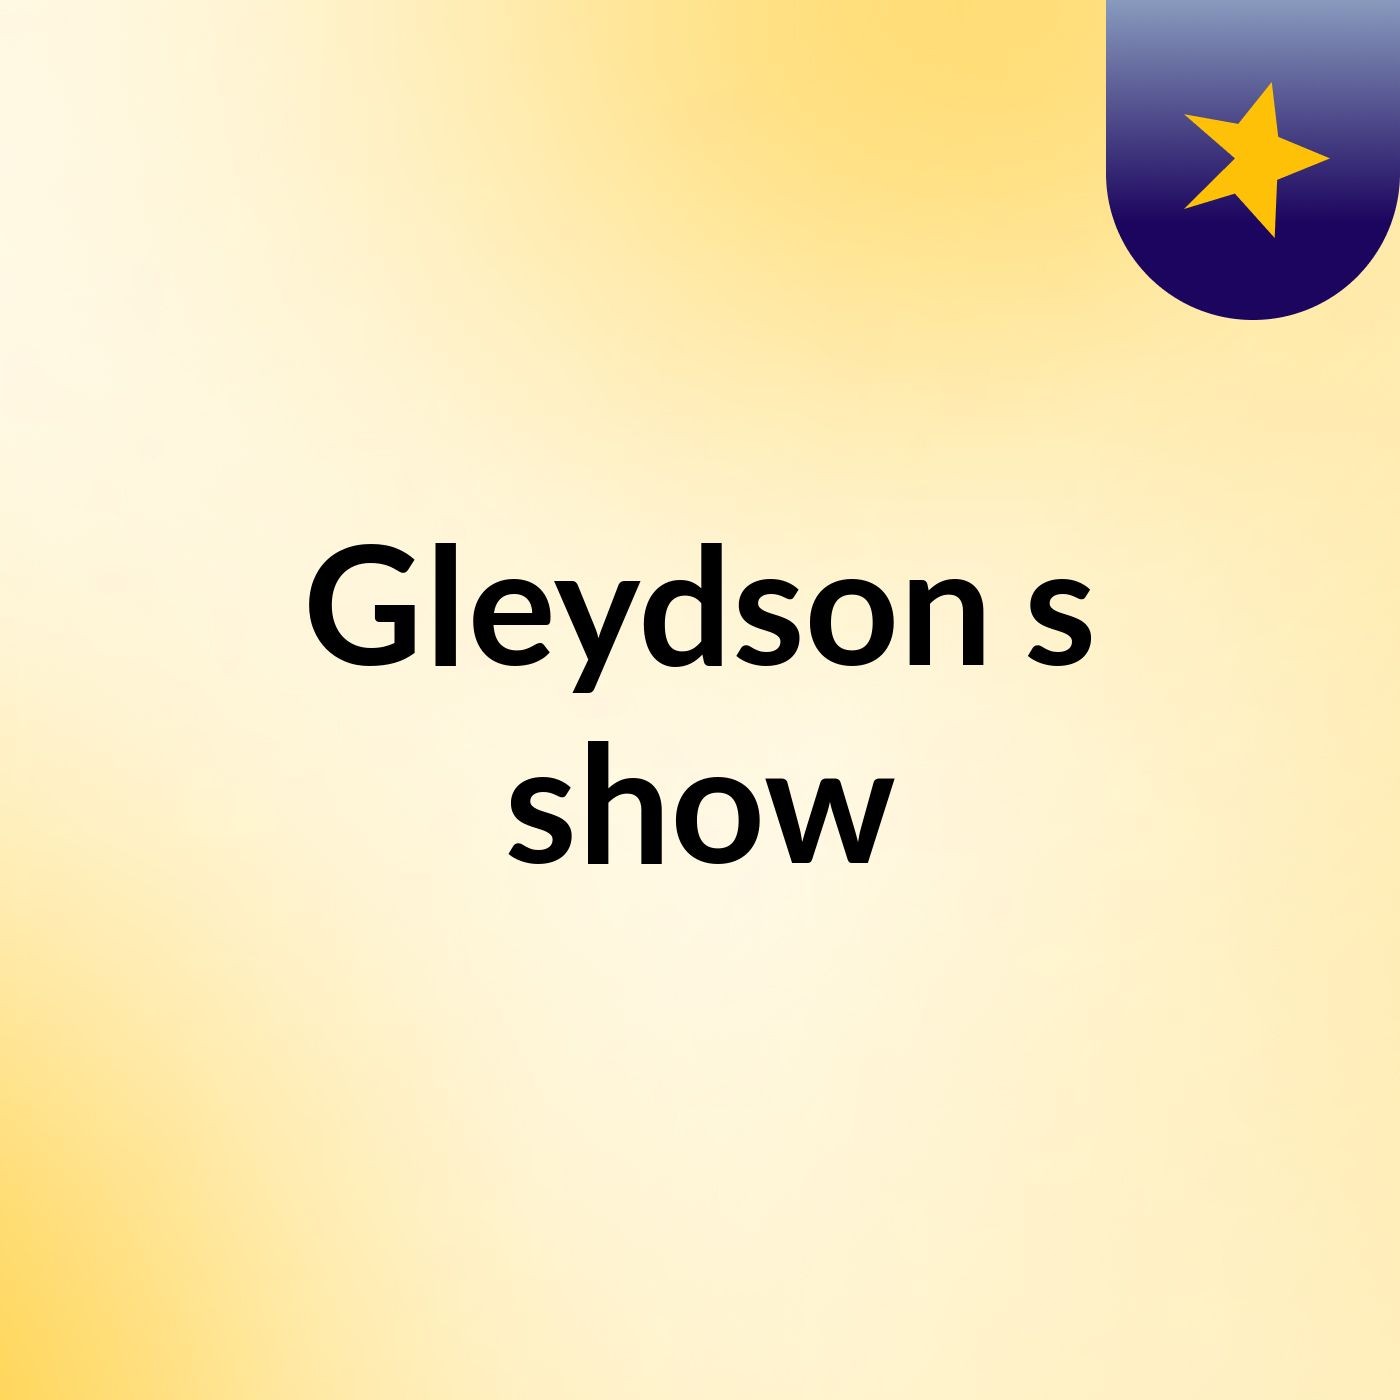 Gleydson's show